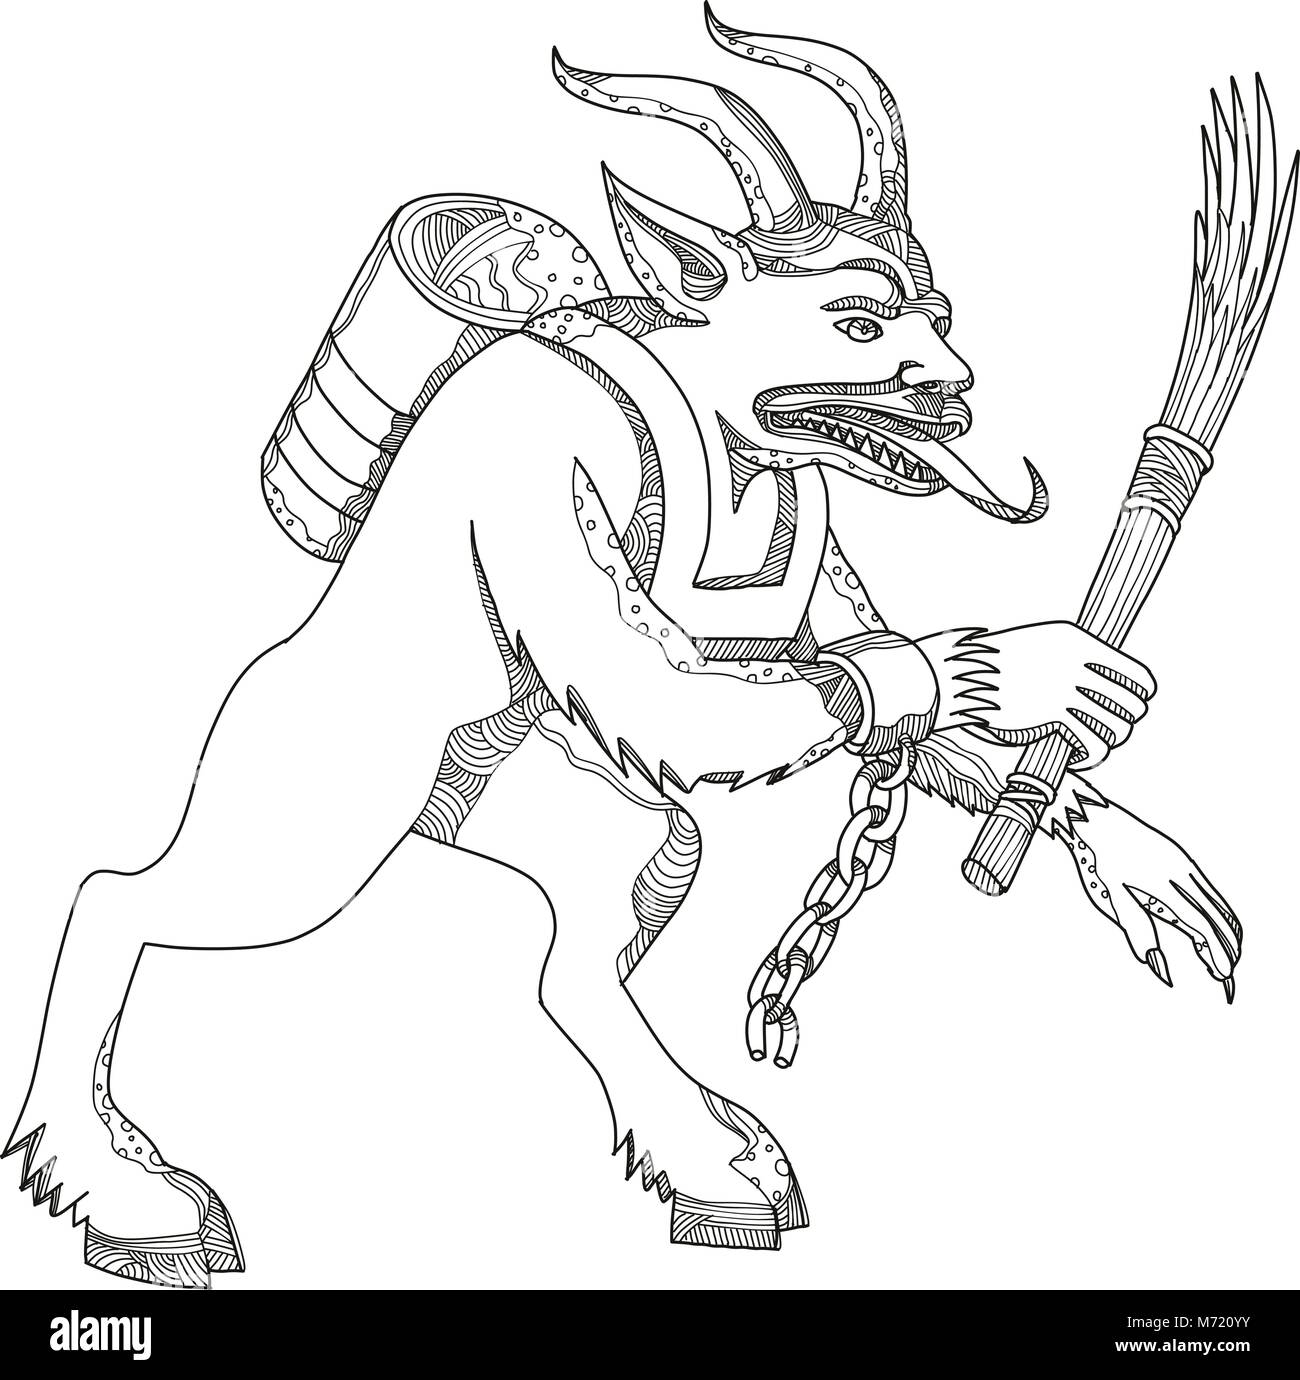 Doodle art Illustration eines Krampus, eine Gehörnte, anthropomorphe Figur, halb Ziege, halb Dämon, bestraft, die Kinder, die in schlecht benahm haben Stock Vektor